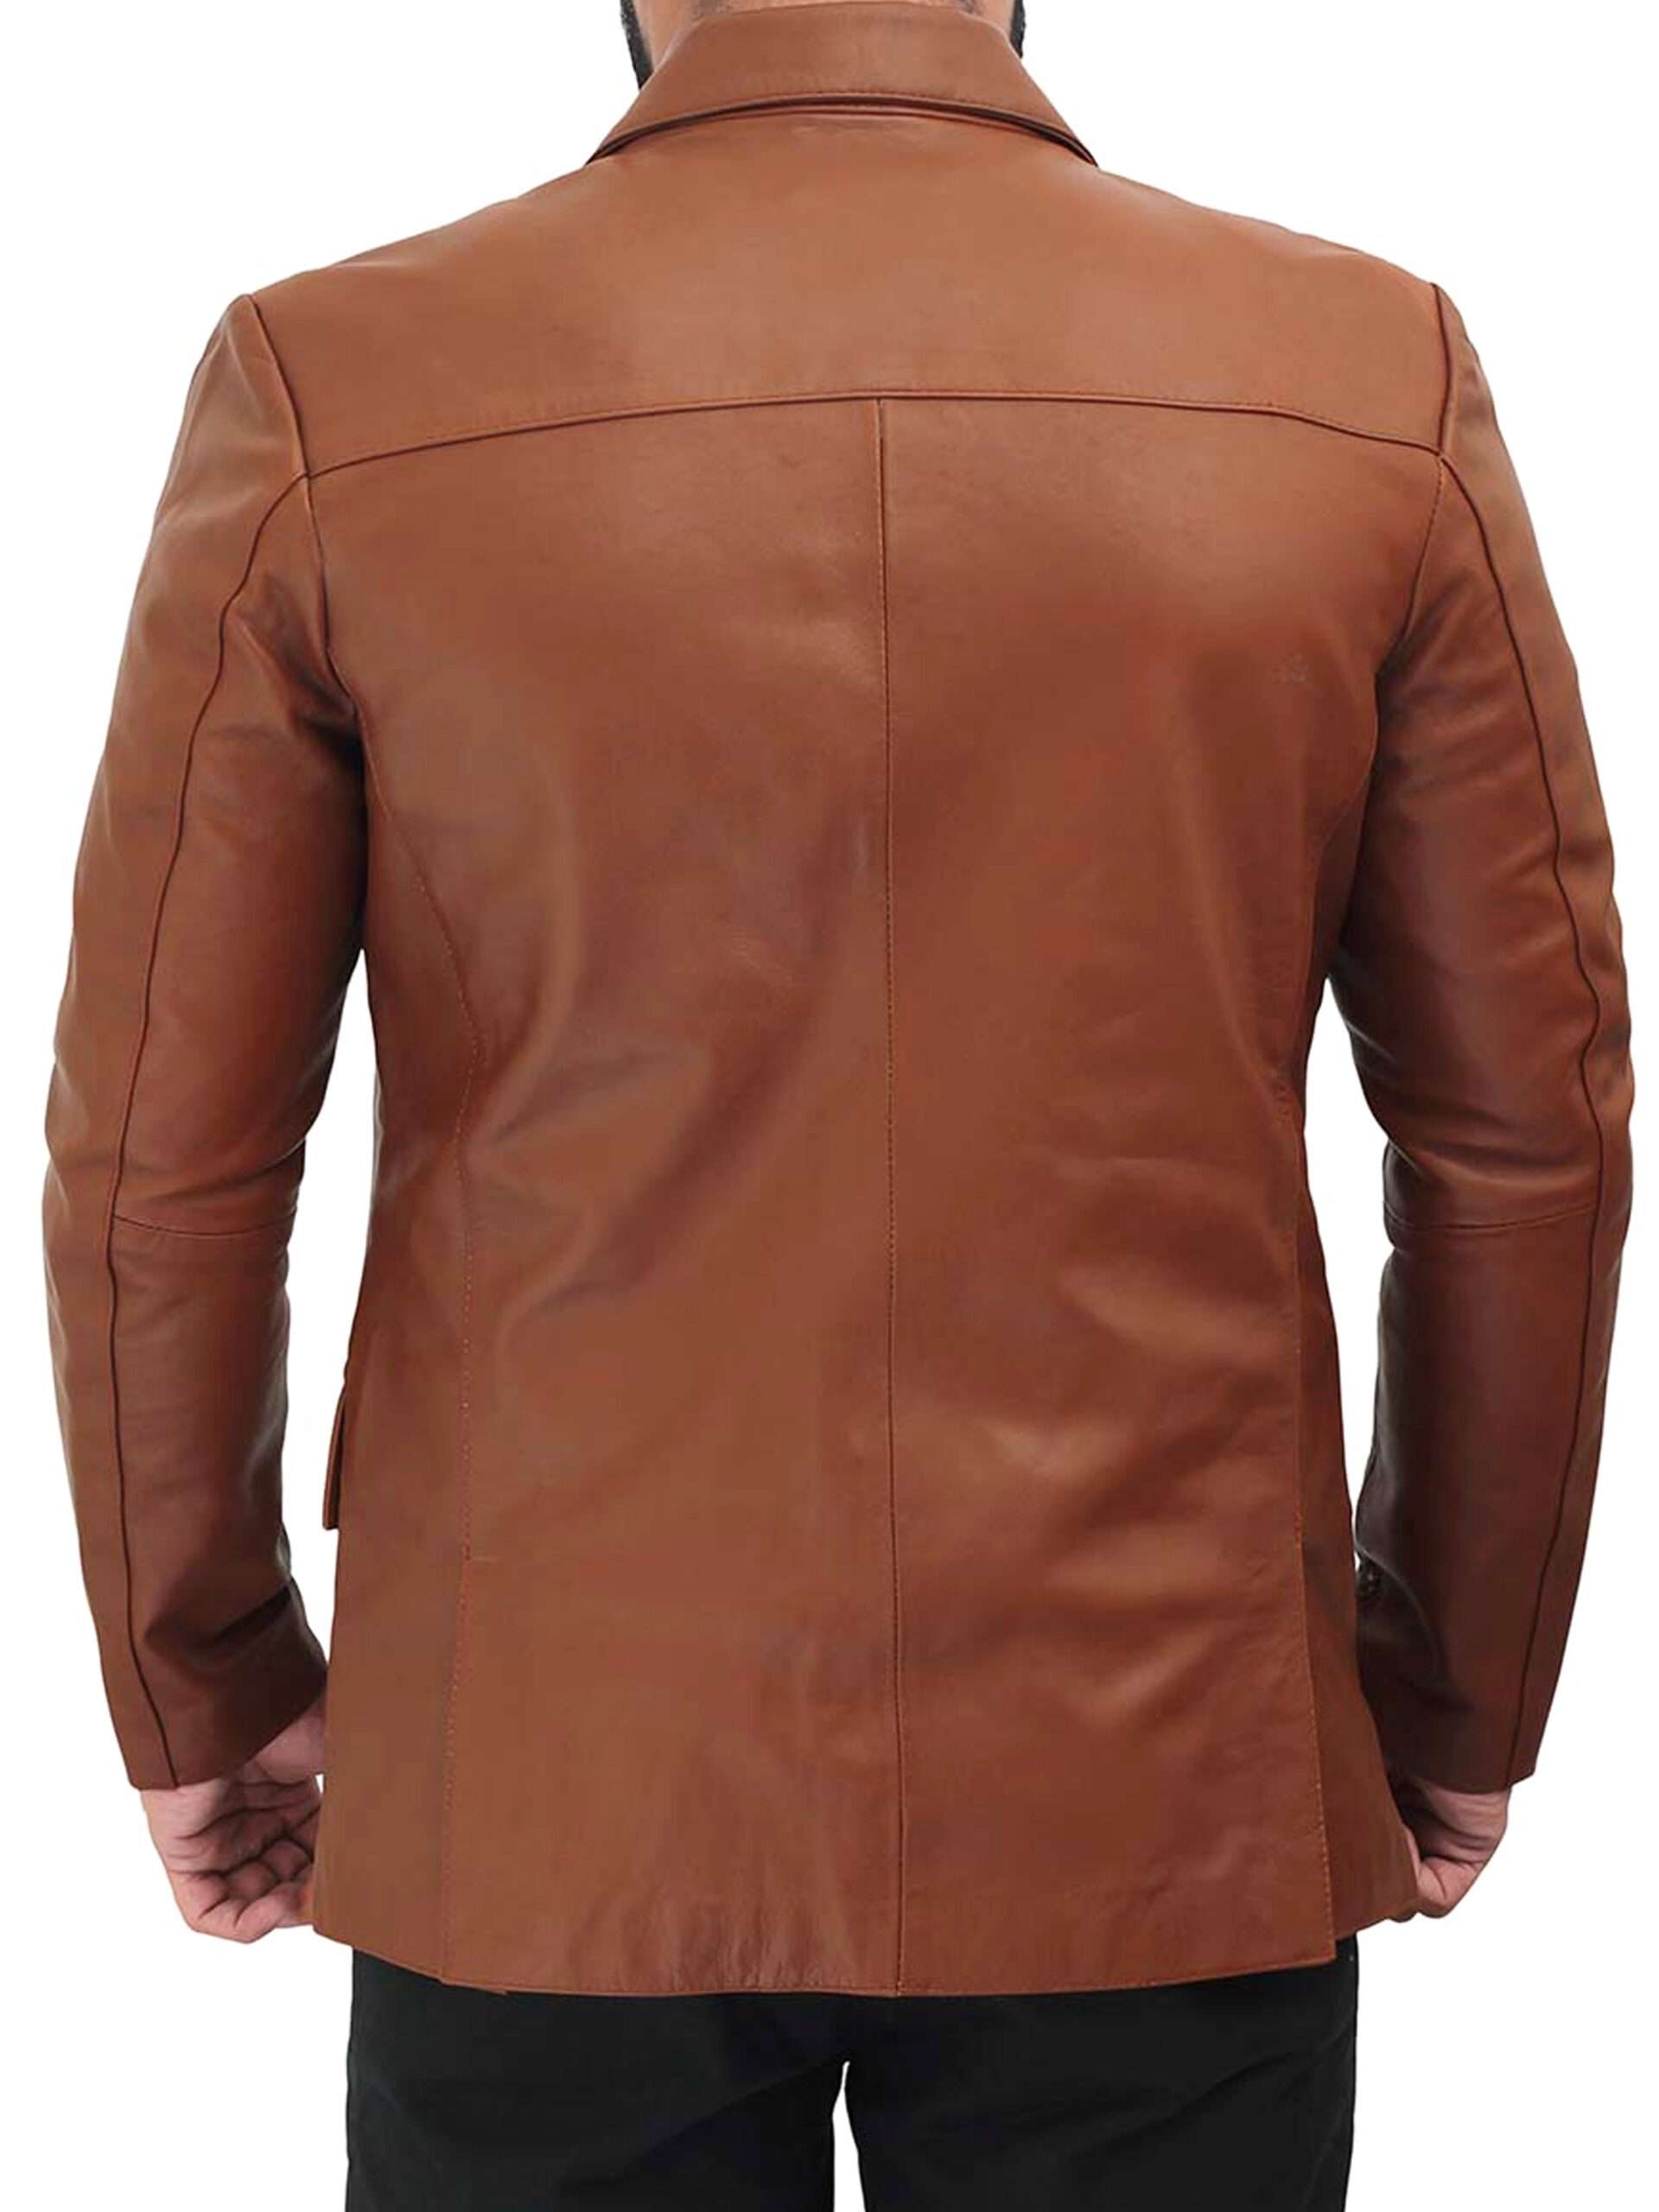 Men's Cognac Brown Leather Blazer Jacket